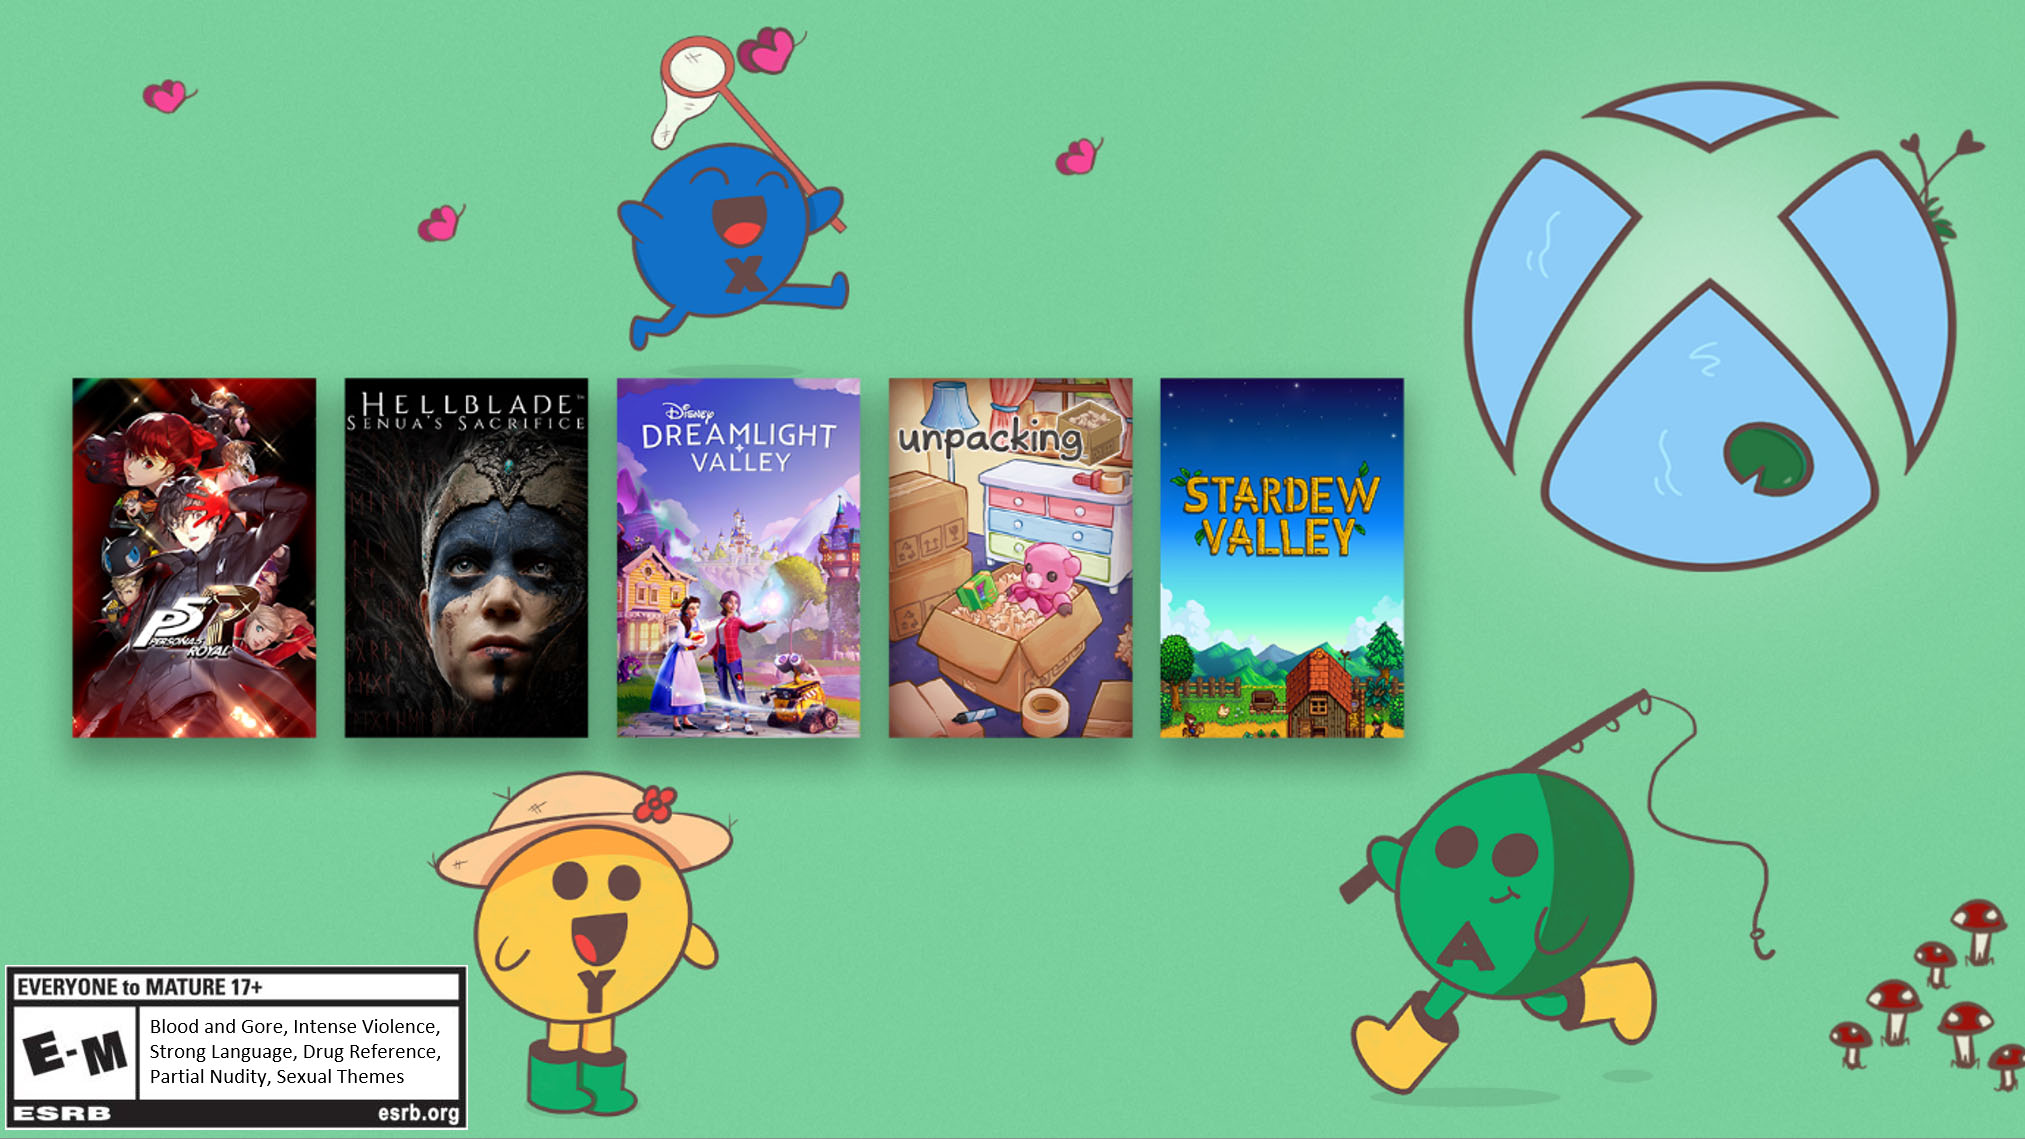 Game Box-Art für Persona 5 Royal, Hellblade: Senua's Sacrifice, Disney Dreamlight Valley, Unpacking und Stardew Valley auf grünem Hintergrund im Cartoon-Stil mit der Xbox-Teichkugel oben rechts, dem blauen "X", das rosa Schmetterlingen mit einem Netz hinterherjagt, dem grünen "A"-Knopf, der eine Angelrute hält, und dem gelben "Y"-Knopf, der einen Strohhut zur Gartenarbeit trägt.